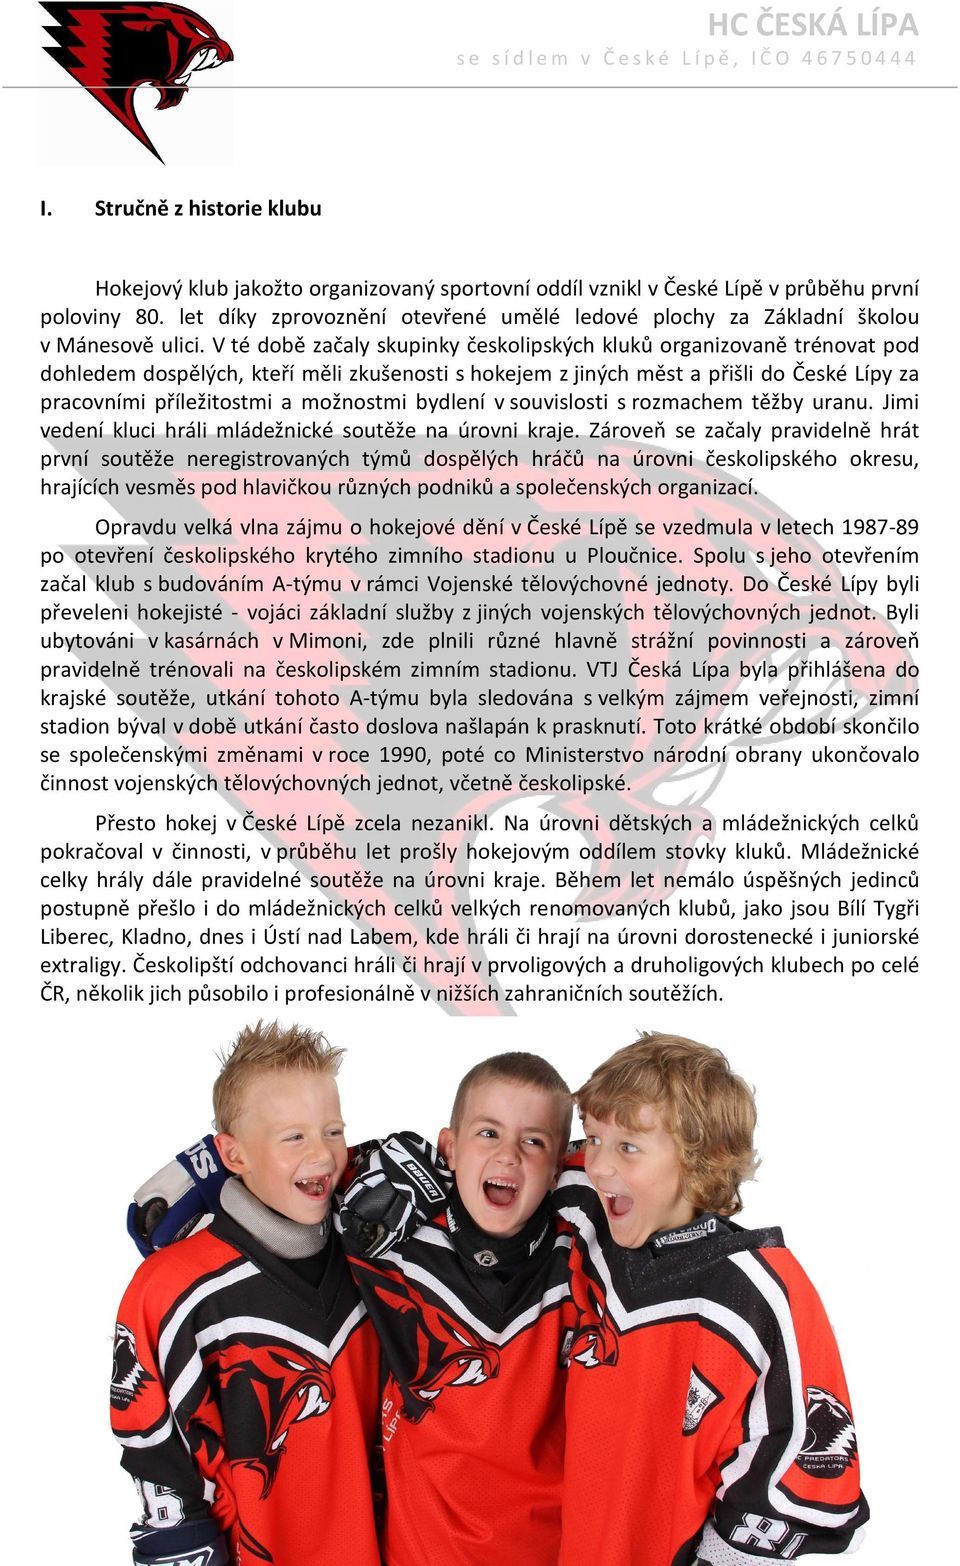 V té době začaly skupinky českolipských kluků organizovaně trénovat pod dohledem dospělých, kteří měli zkušenosti s hokejem z jiných měst a přišli do České Lípy za pracovními příležitostmi a